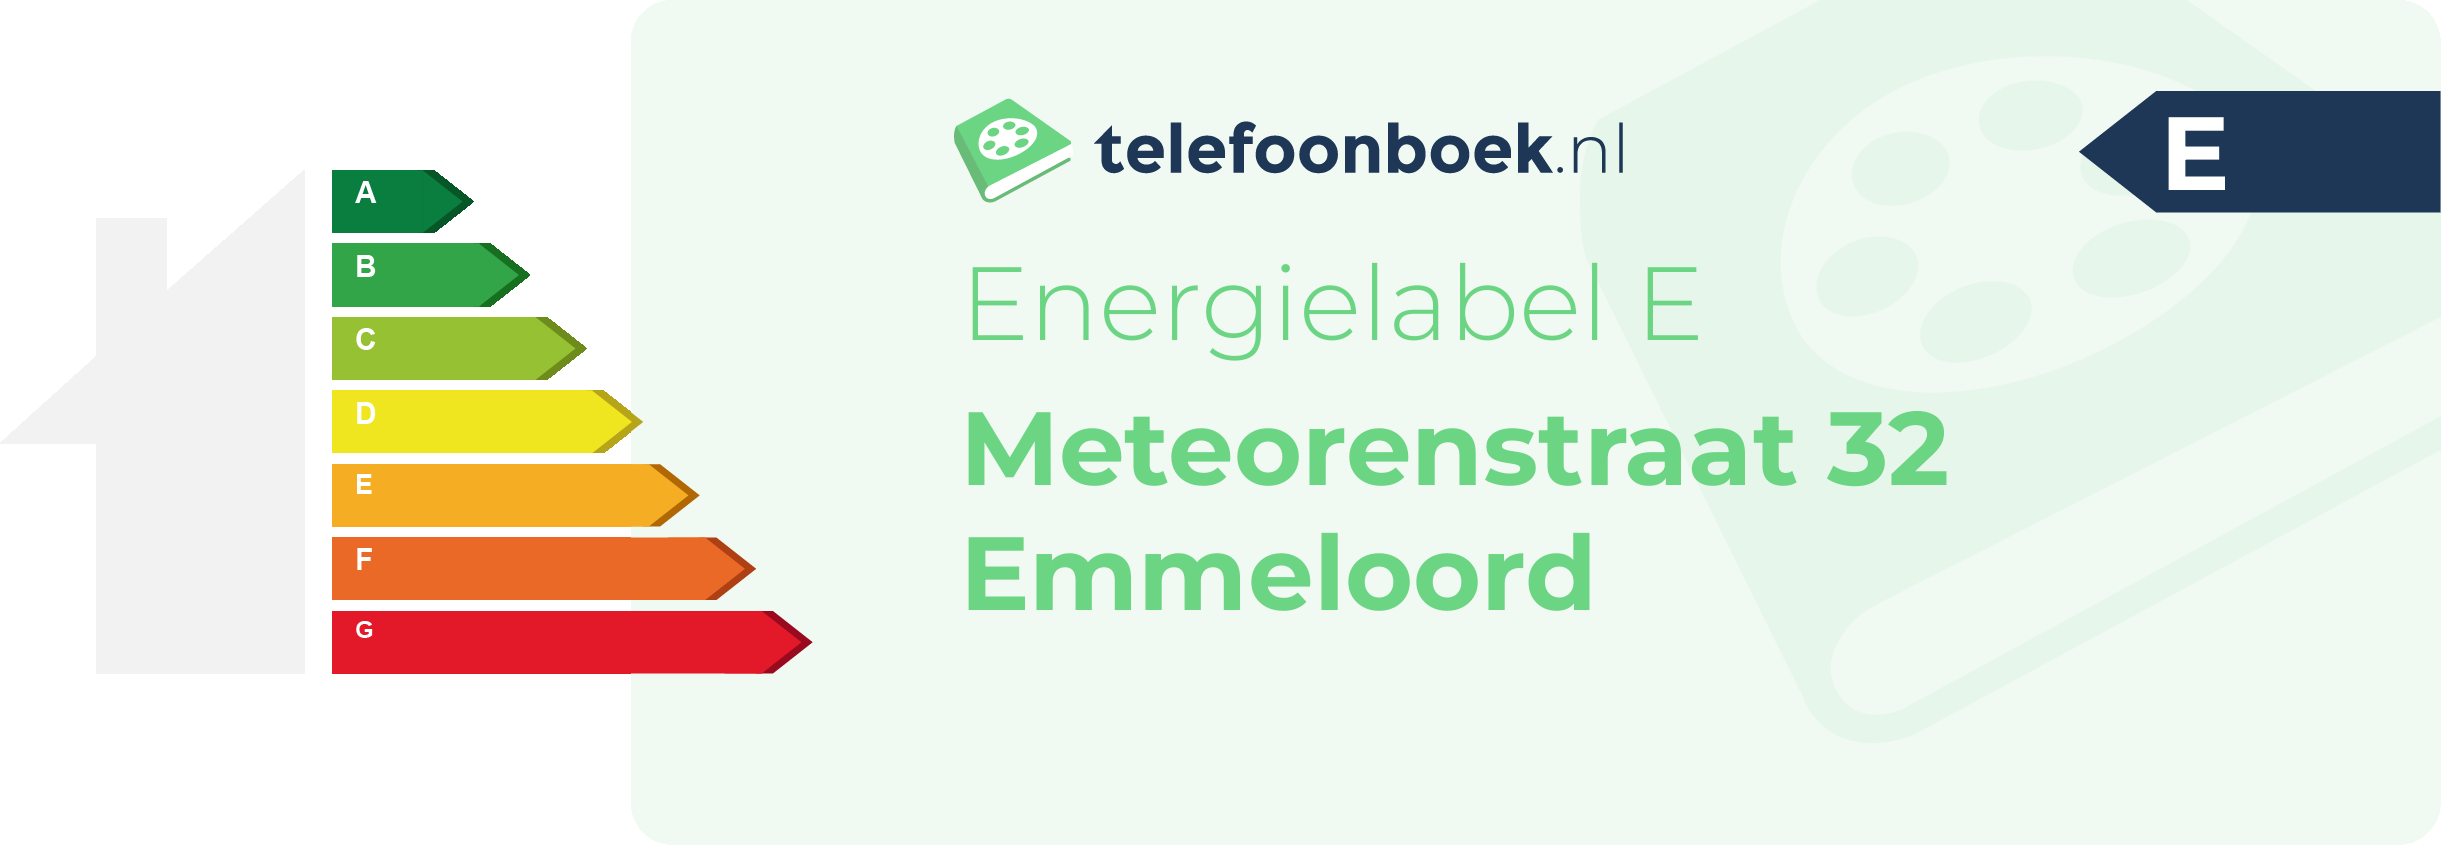 Energielabel Meteorenstraat 32 Emmeloord